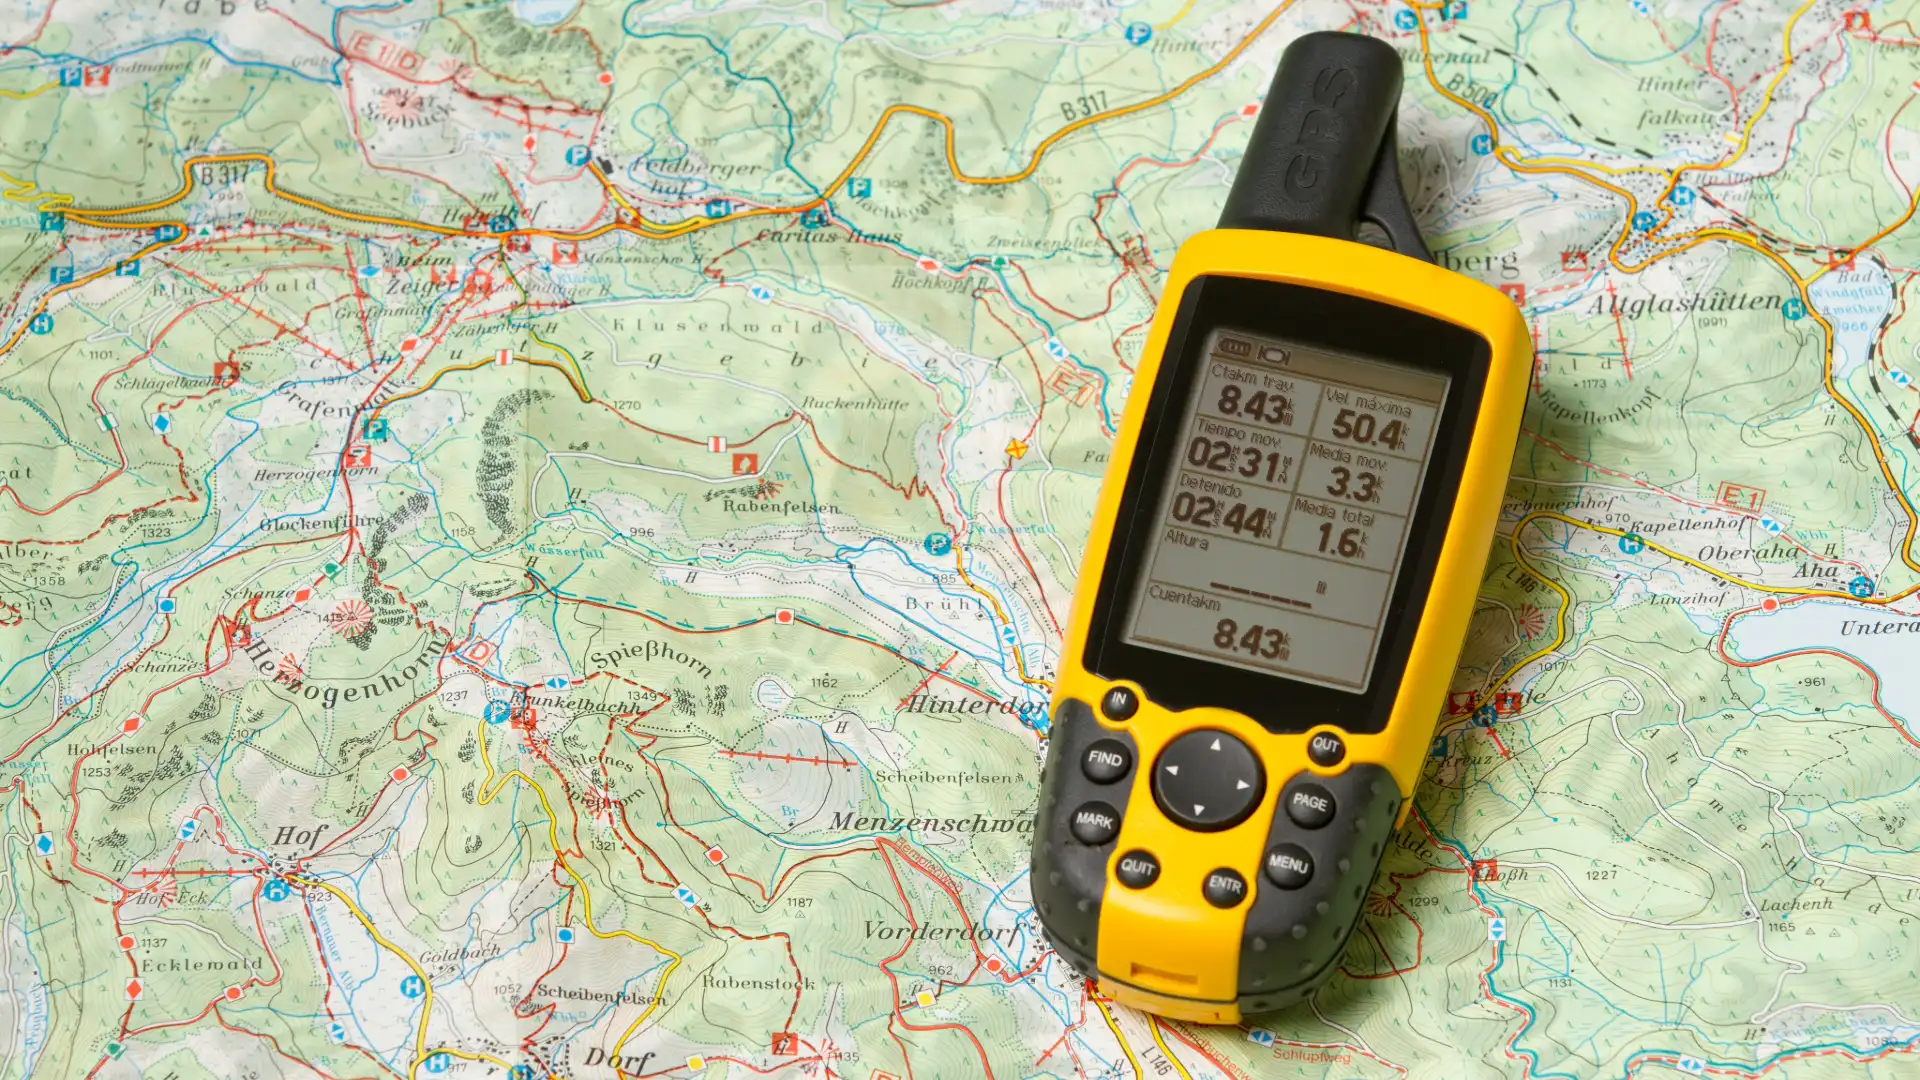 TG-6 als GPS Tracker einsetzen